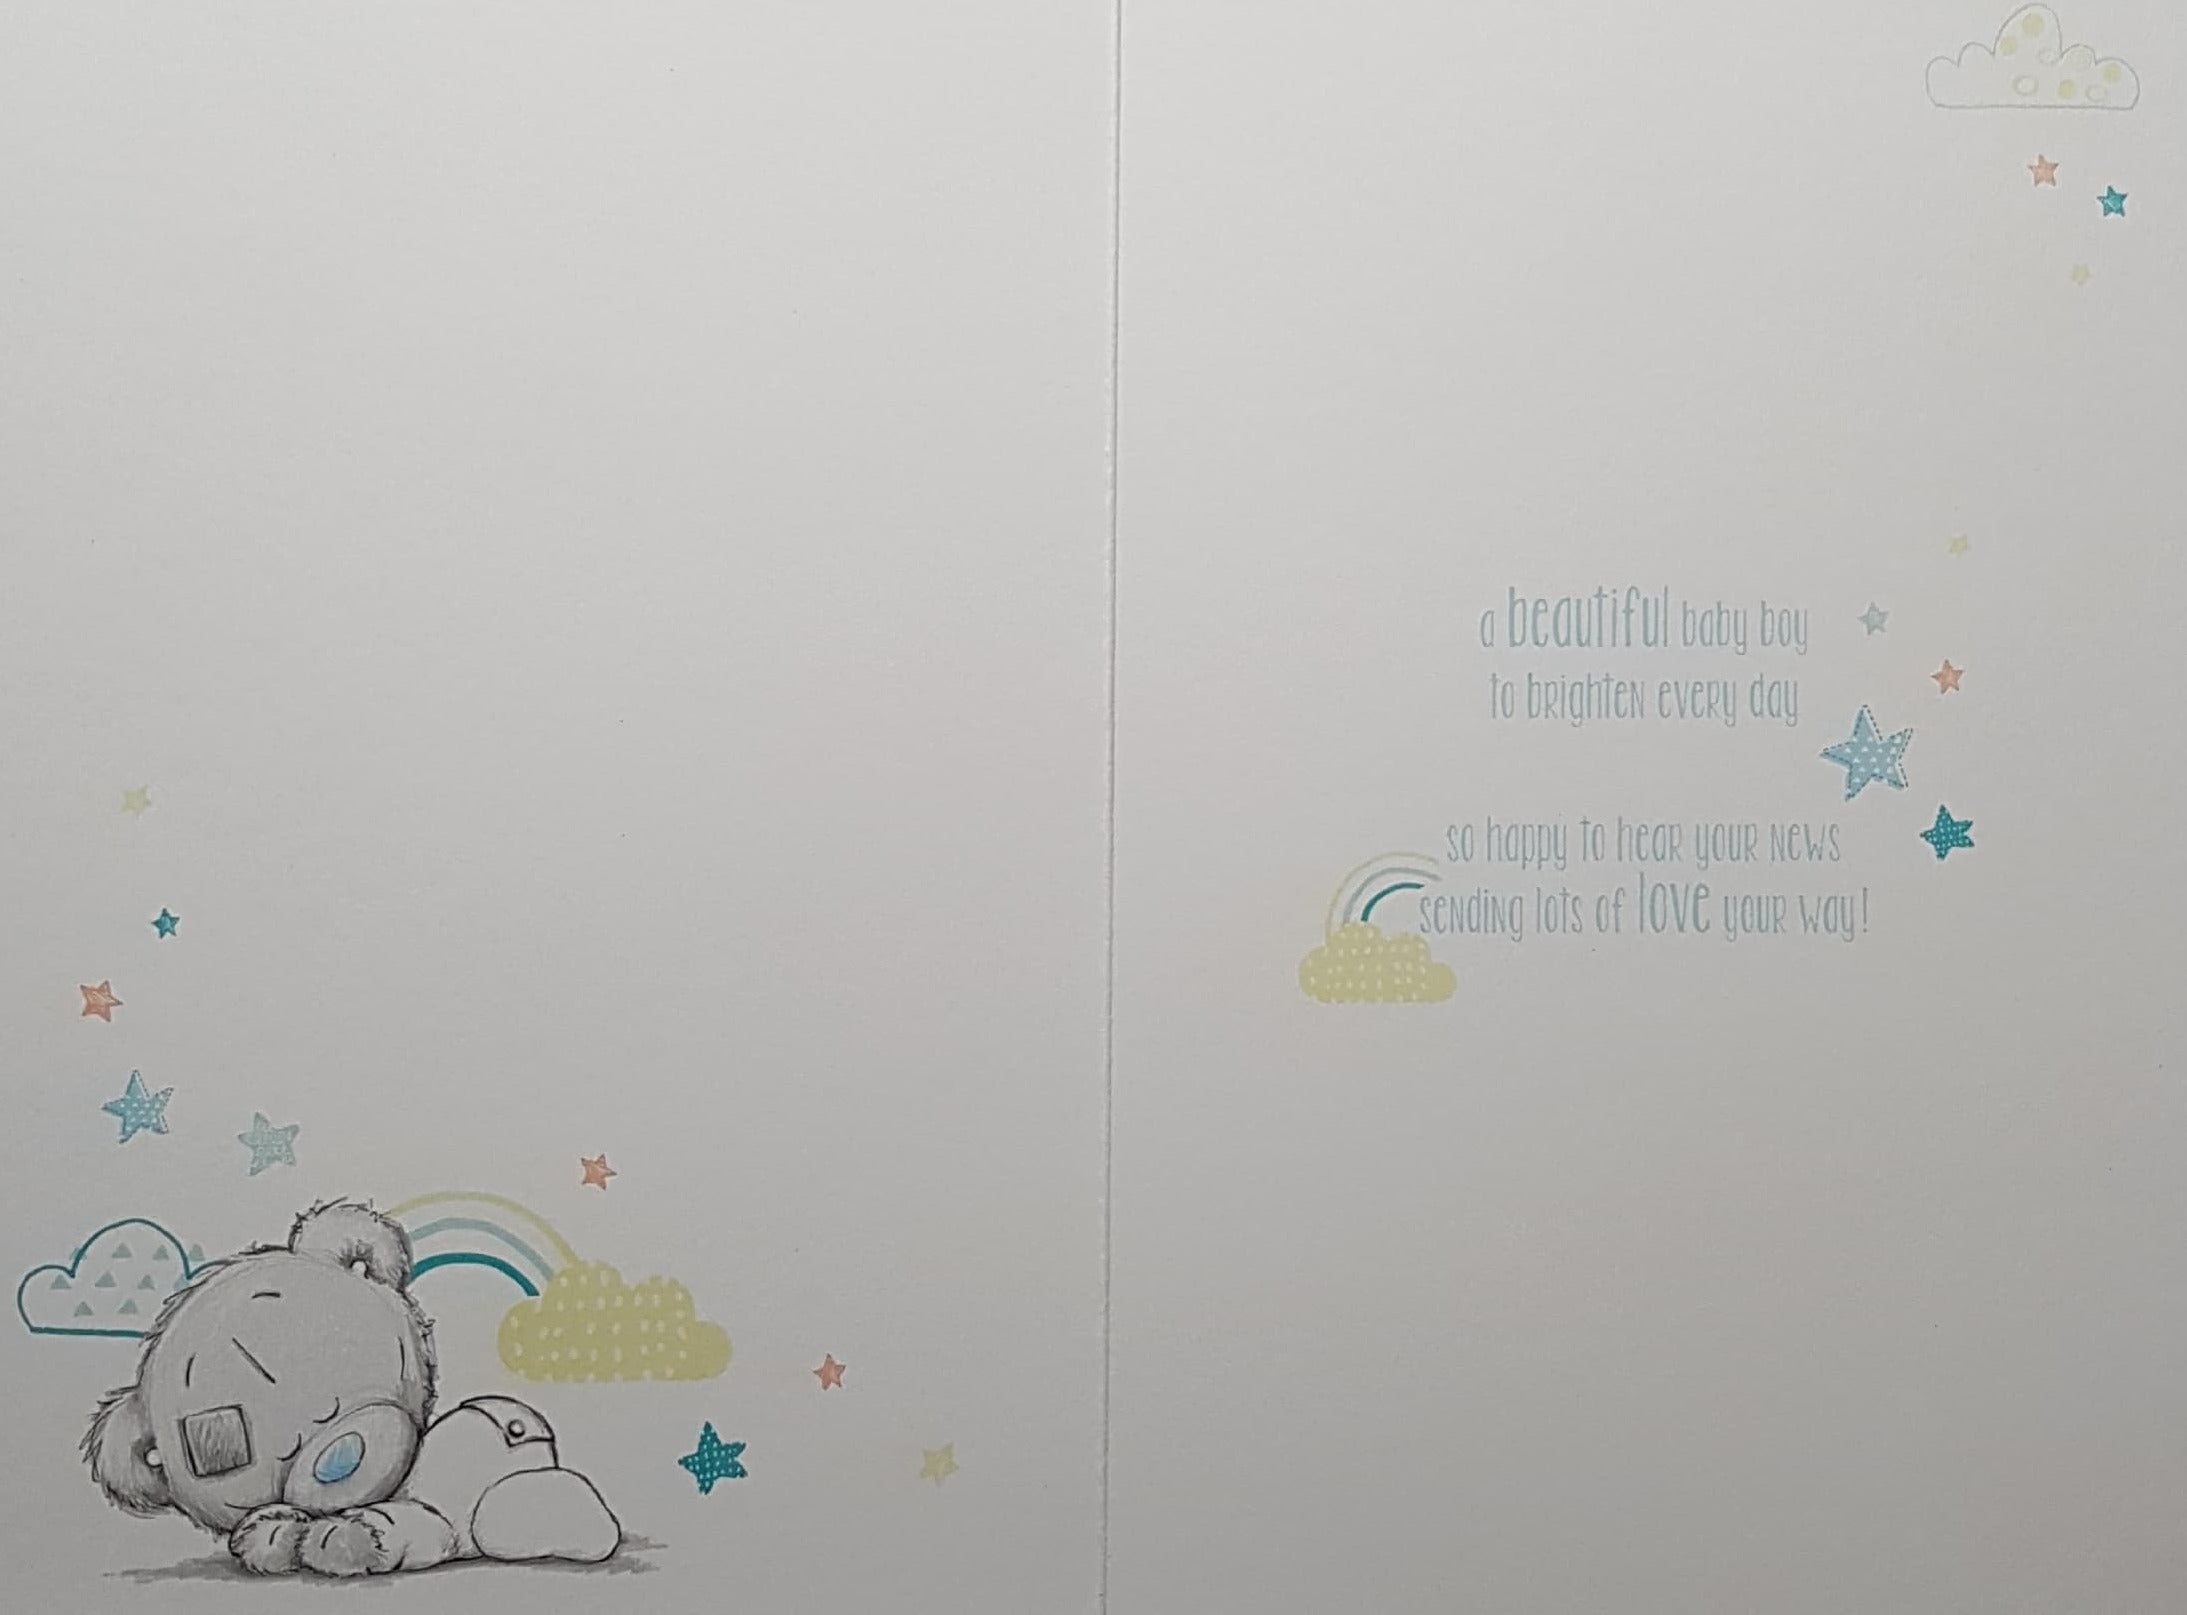 New Baby Card - Baby Boy / Cute Teddy Sleeping Under Blue Stars